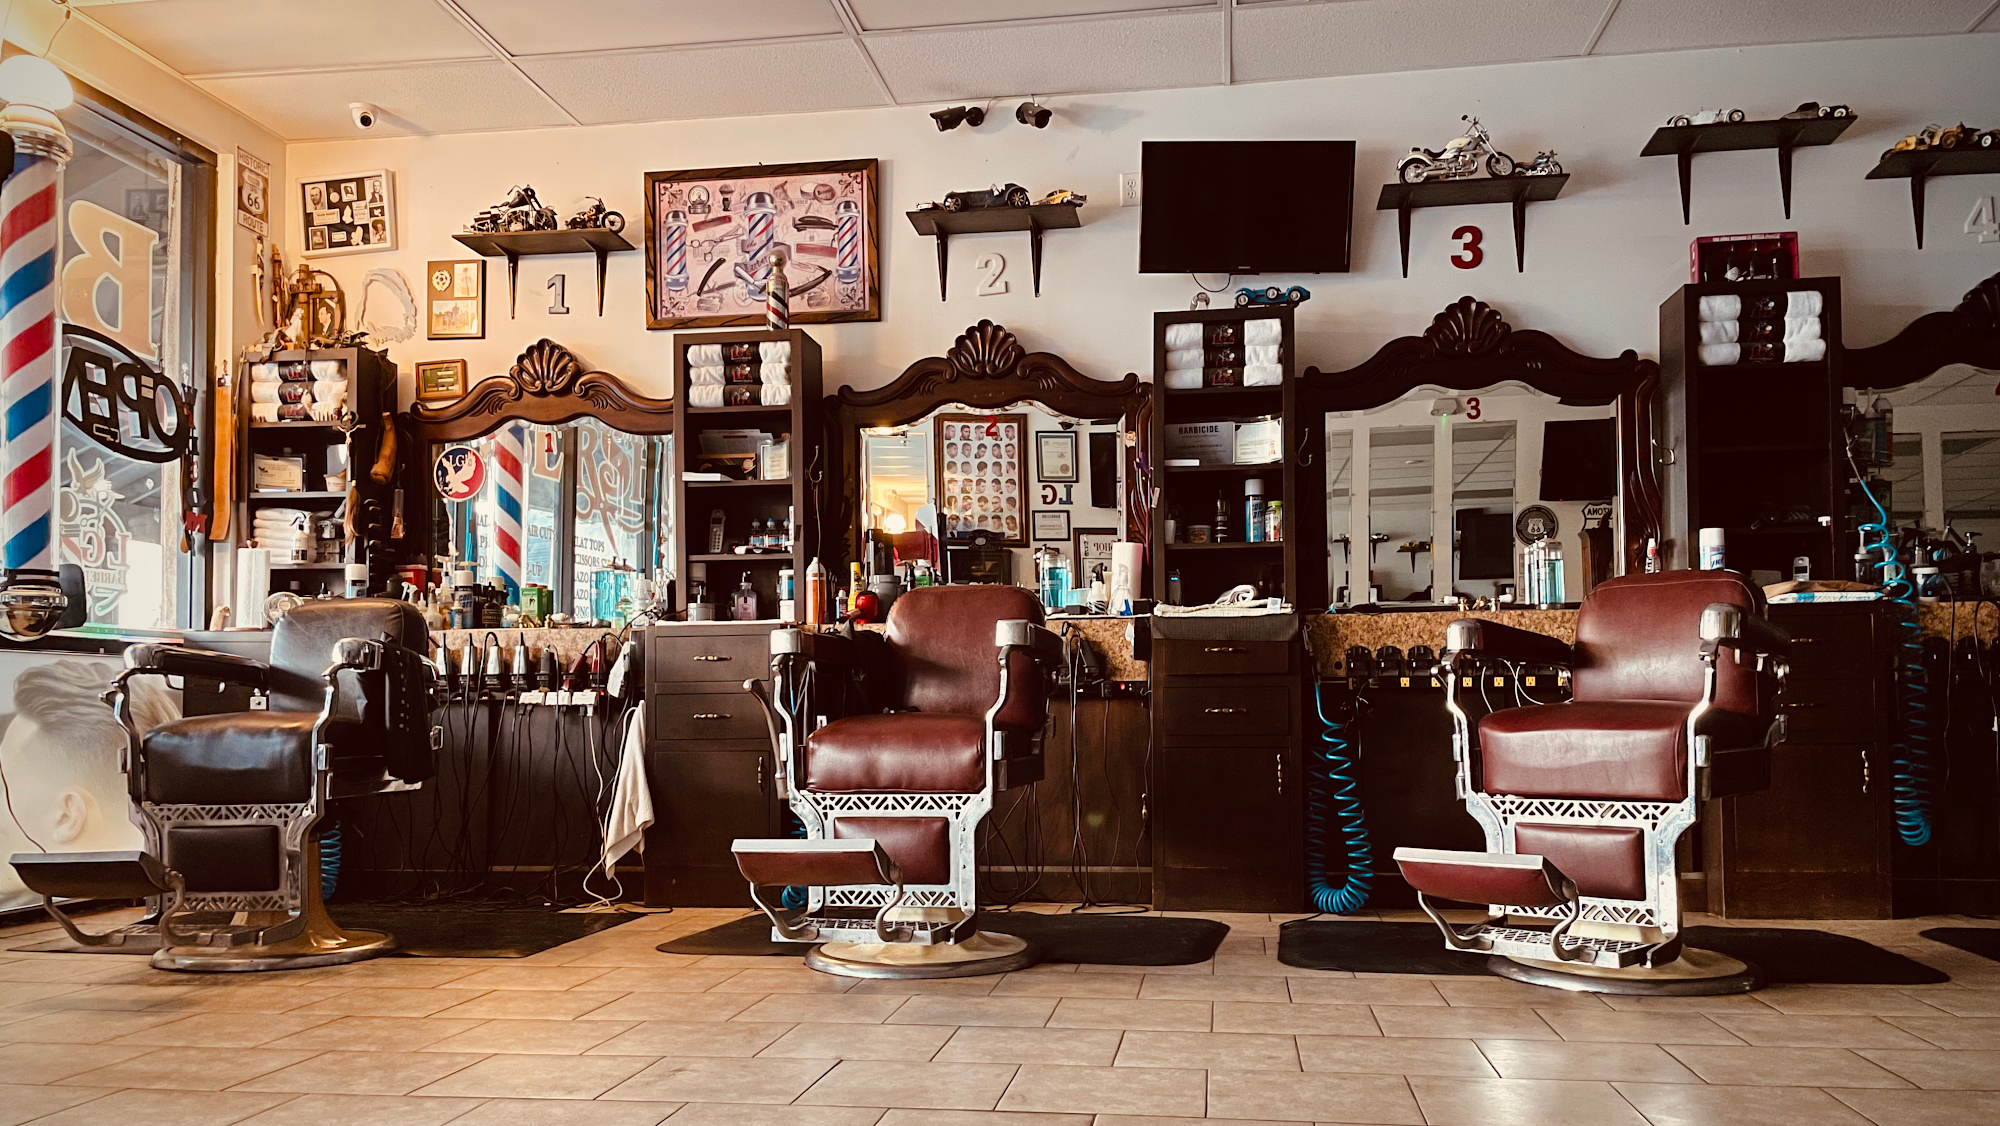 LG's Barber Shop